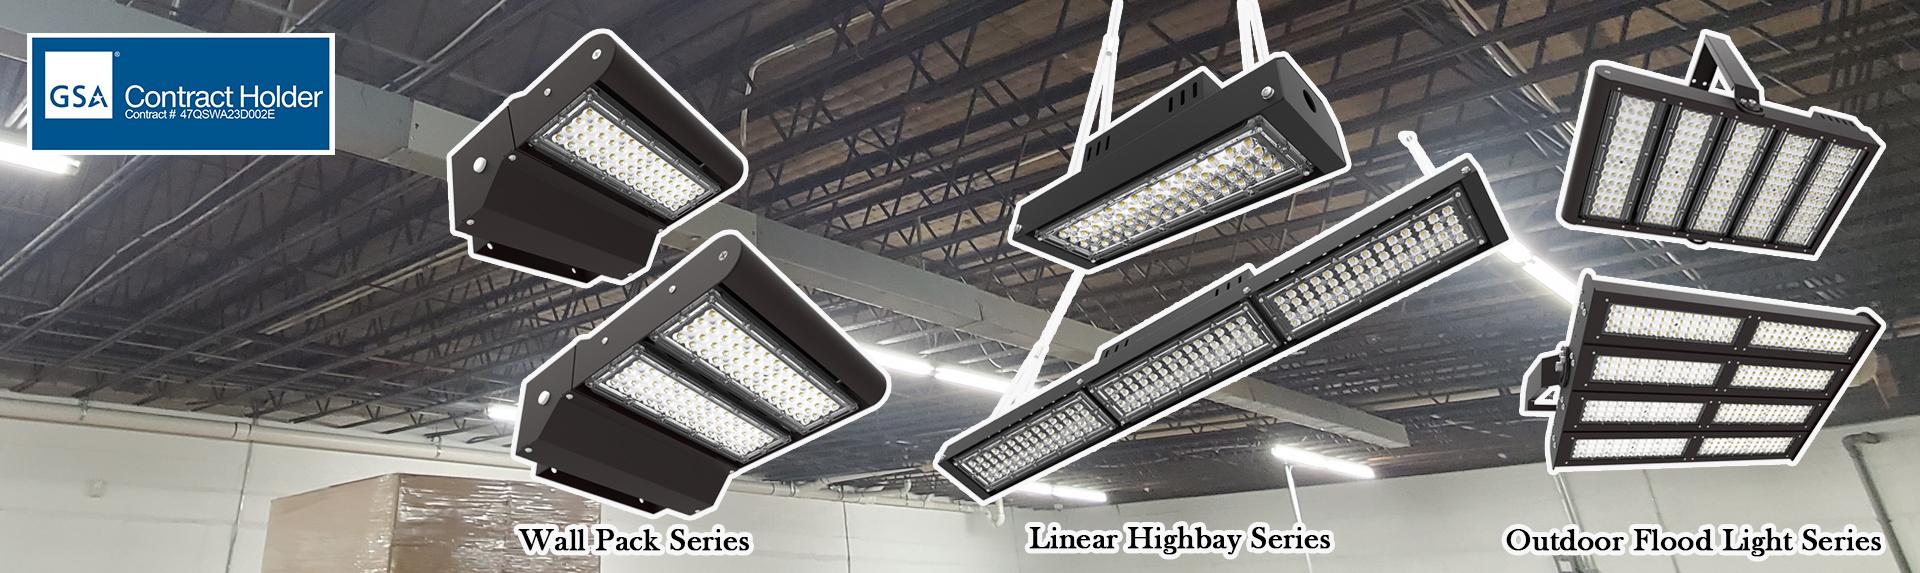 Energy Saving with LED Lighting Fixtures & Bulbs